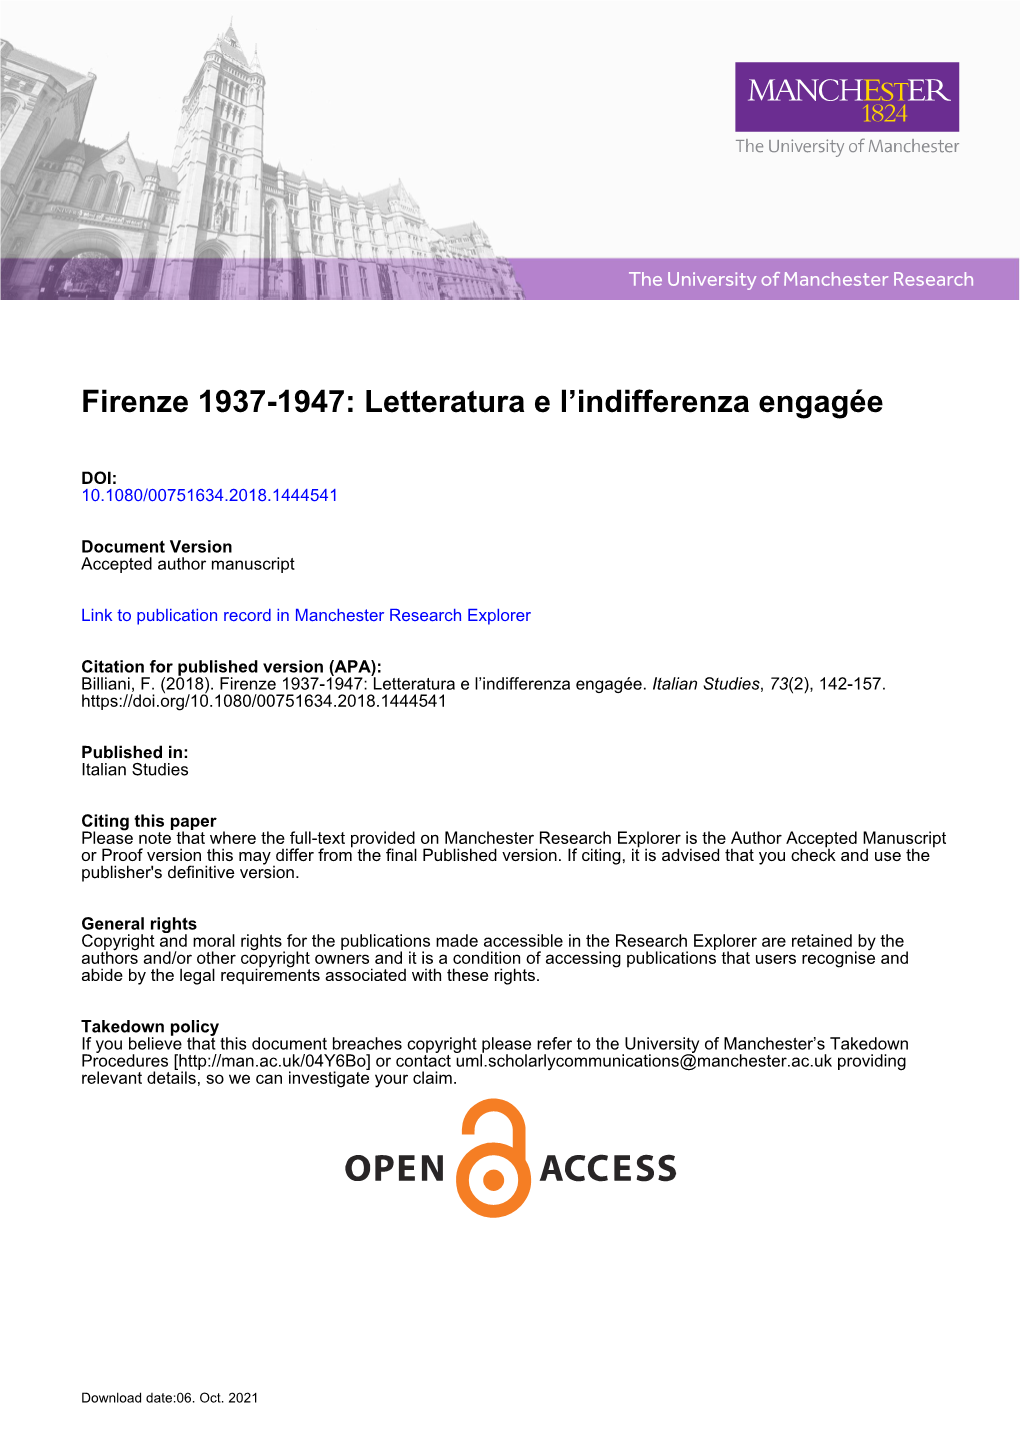 Firenze 1937-1947: Letteratura E L’Indifferenza Engagée